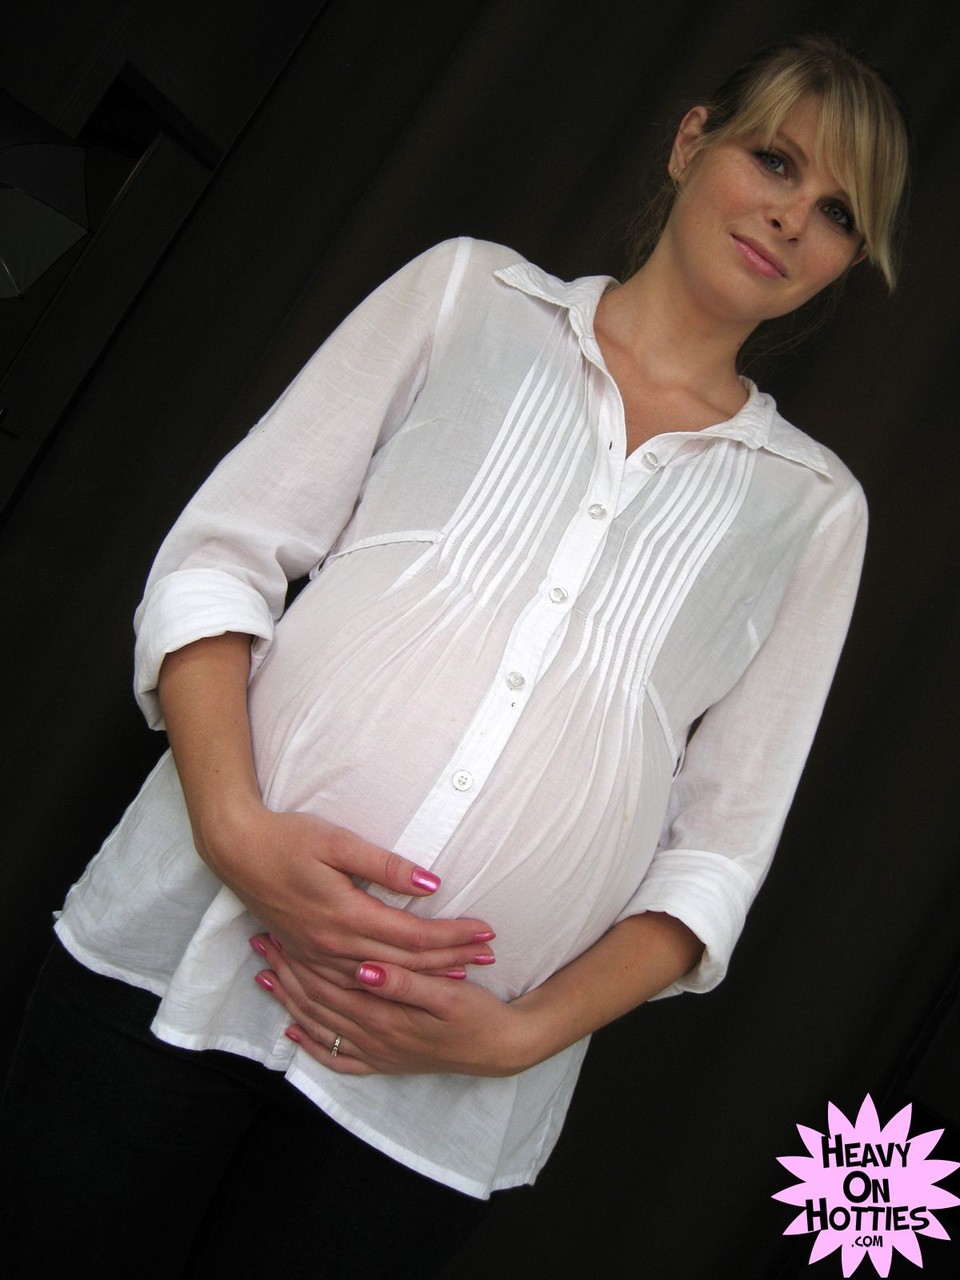 Sweet pregnant Ukrainian Wiska milks her big tits and gives a blowjob ポルノ写真 #428635789 | Heavy On Hotties Pics, Wiska, Pregnant, モバイルポルノ